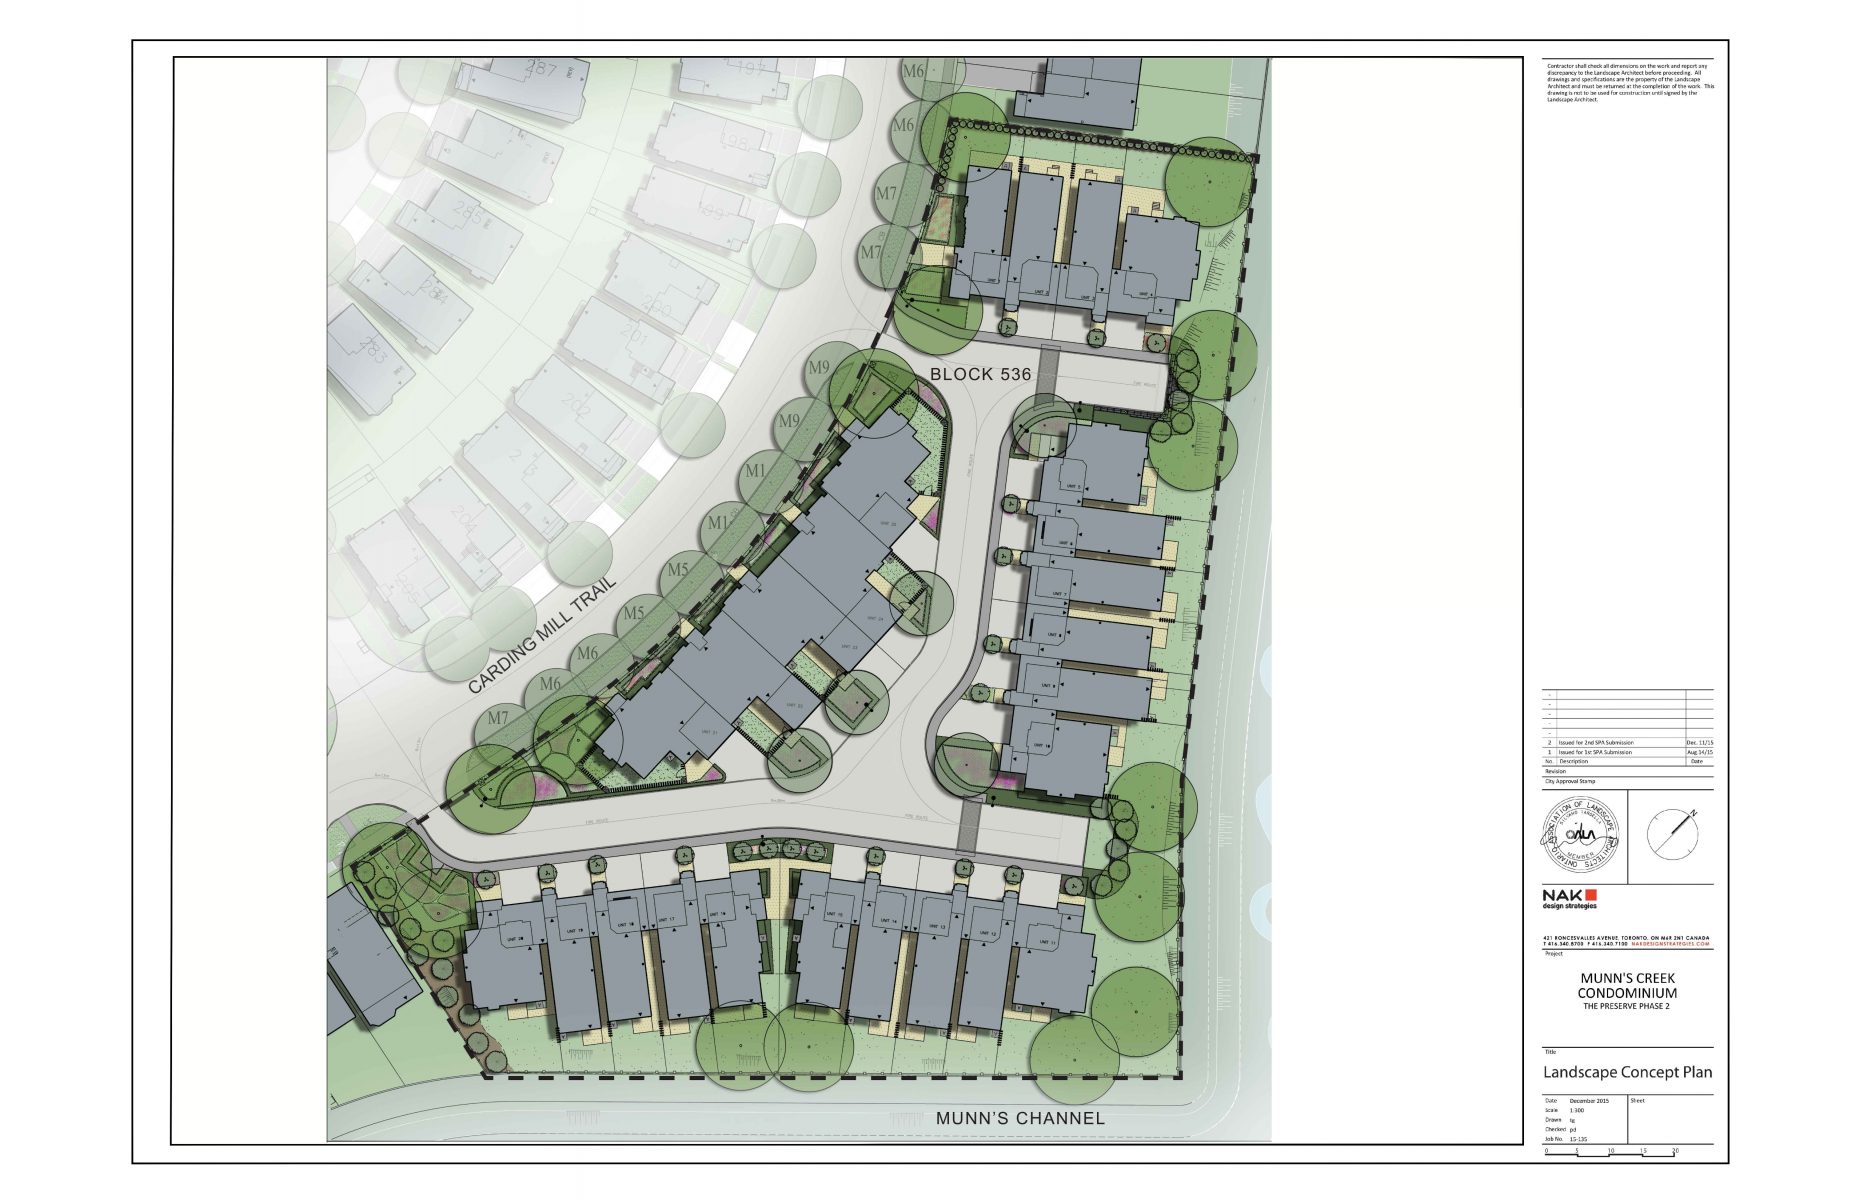 Korsiak Urban Planning - Oakville Portfolio - Riverpath Common, Infill Development - Oakville, Ontario